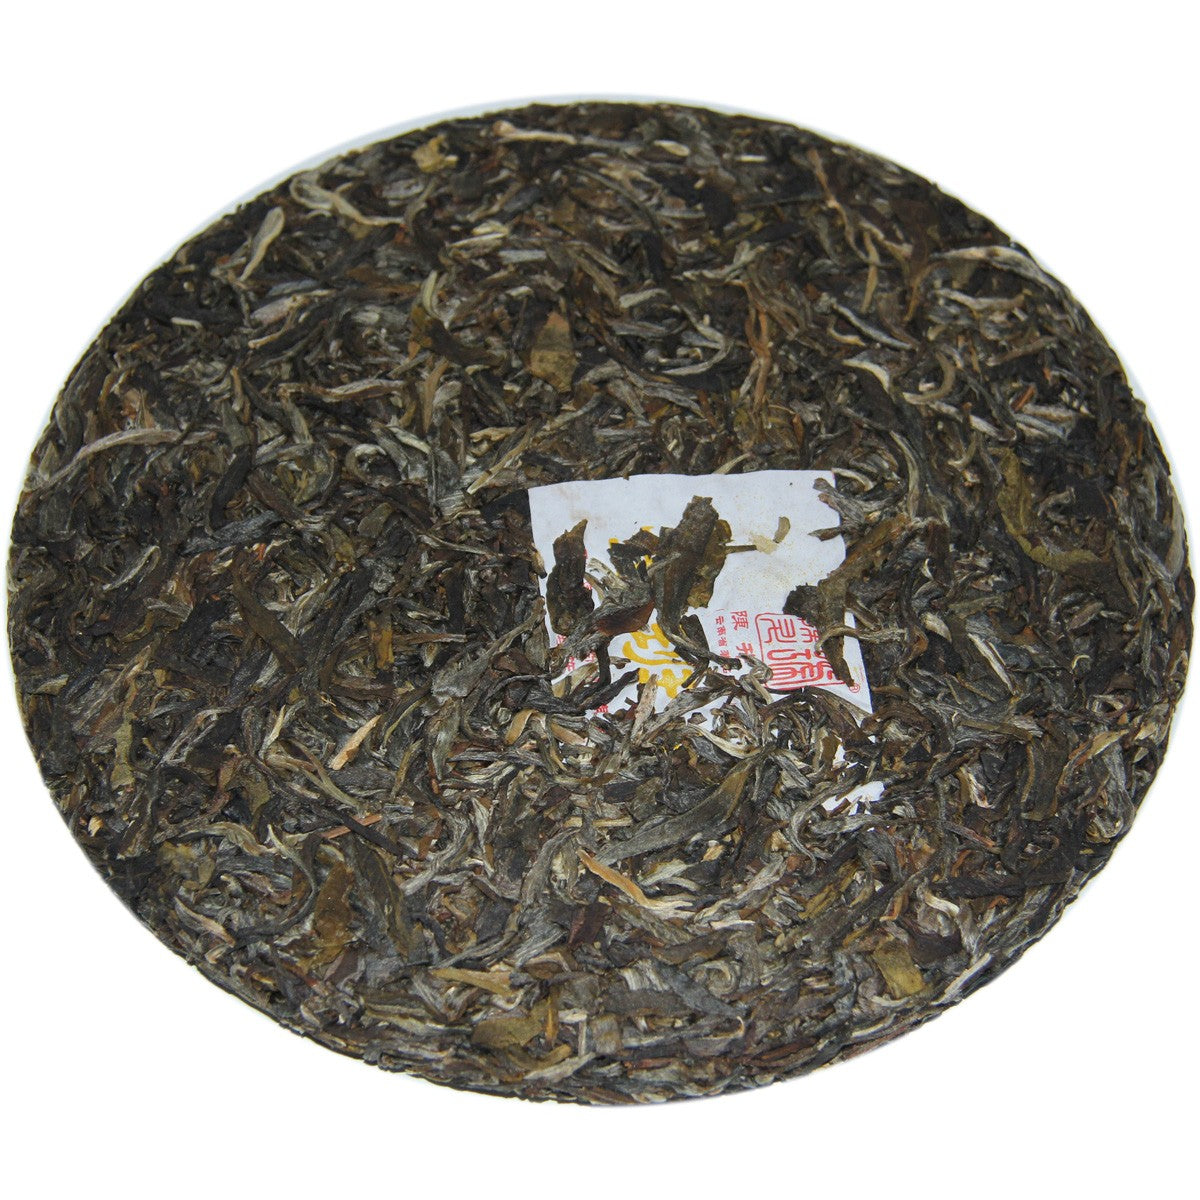 
                  
                    2012 Jin Ban Zhang Raw Pu-erh Tea
                  
                